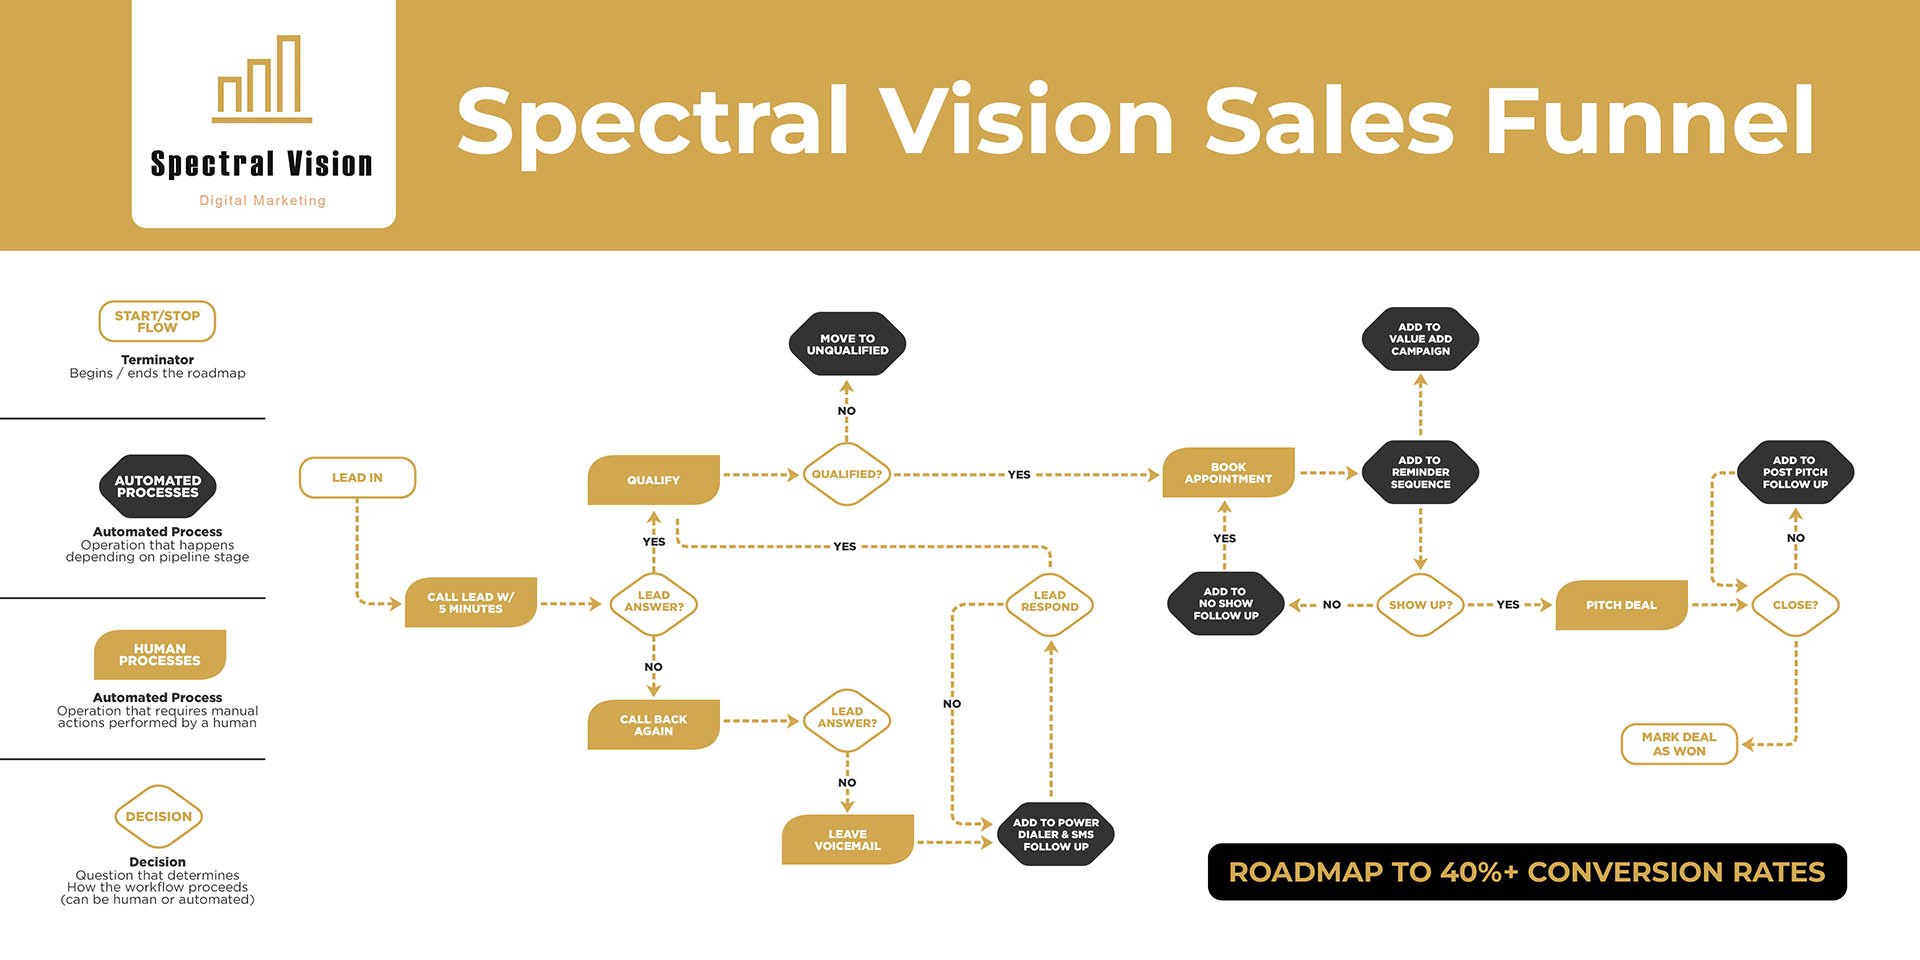 Spectral Vision sales funnel diagram